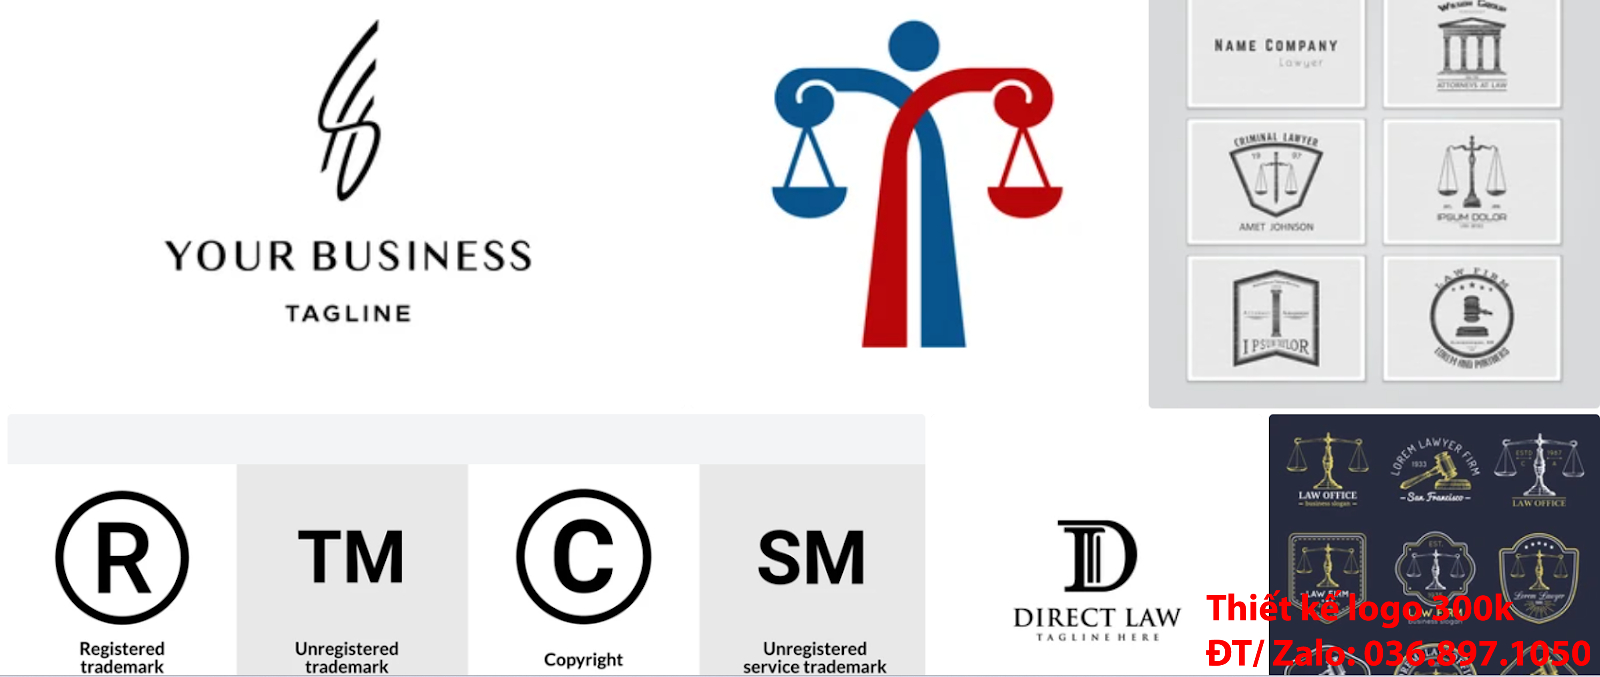 Mẫu thiết kế Logo công ty luật sư đẹp nhất hiện nay giá rẻ 500k uy tín chuyên nghiệp